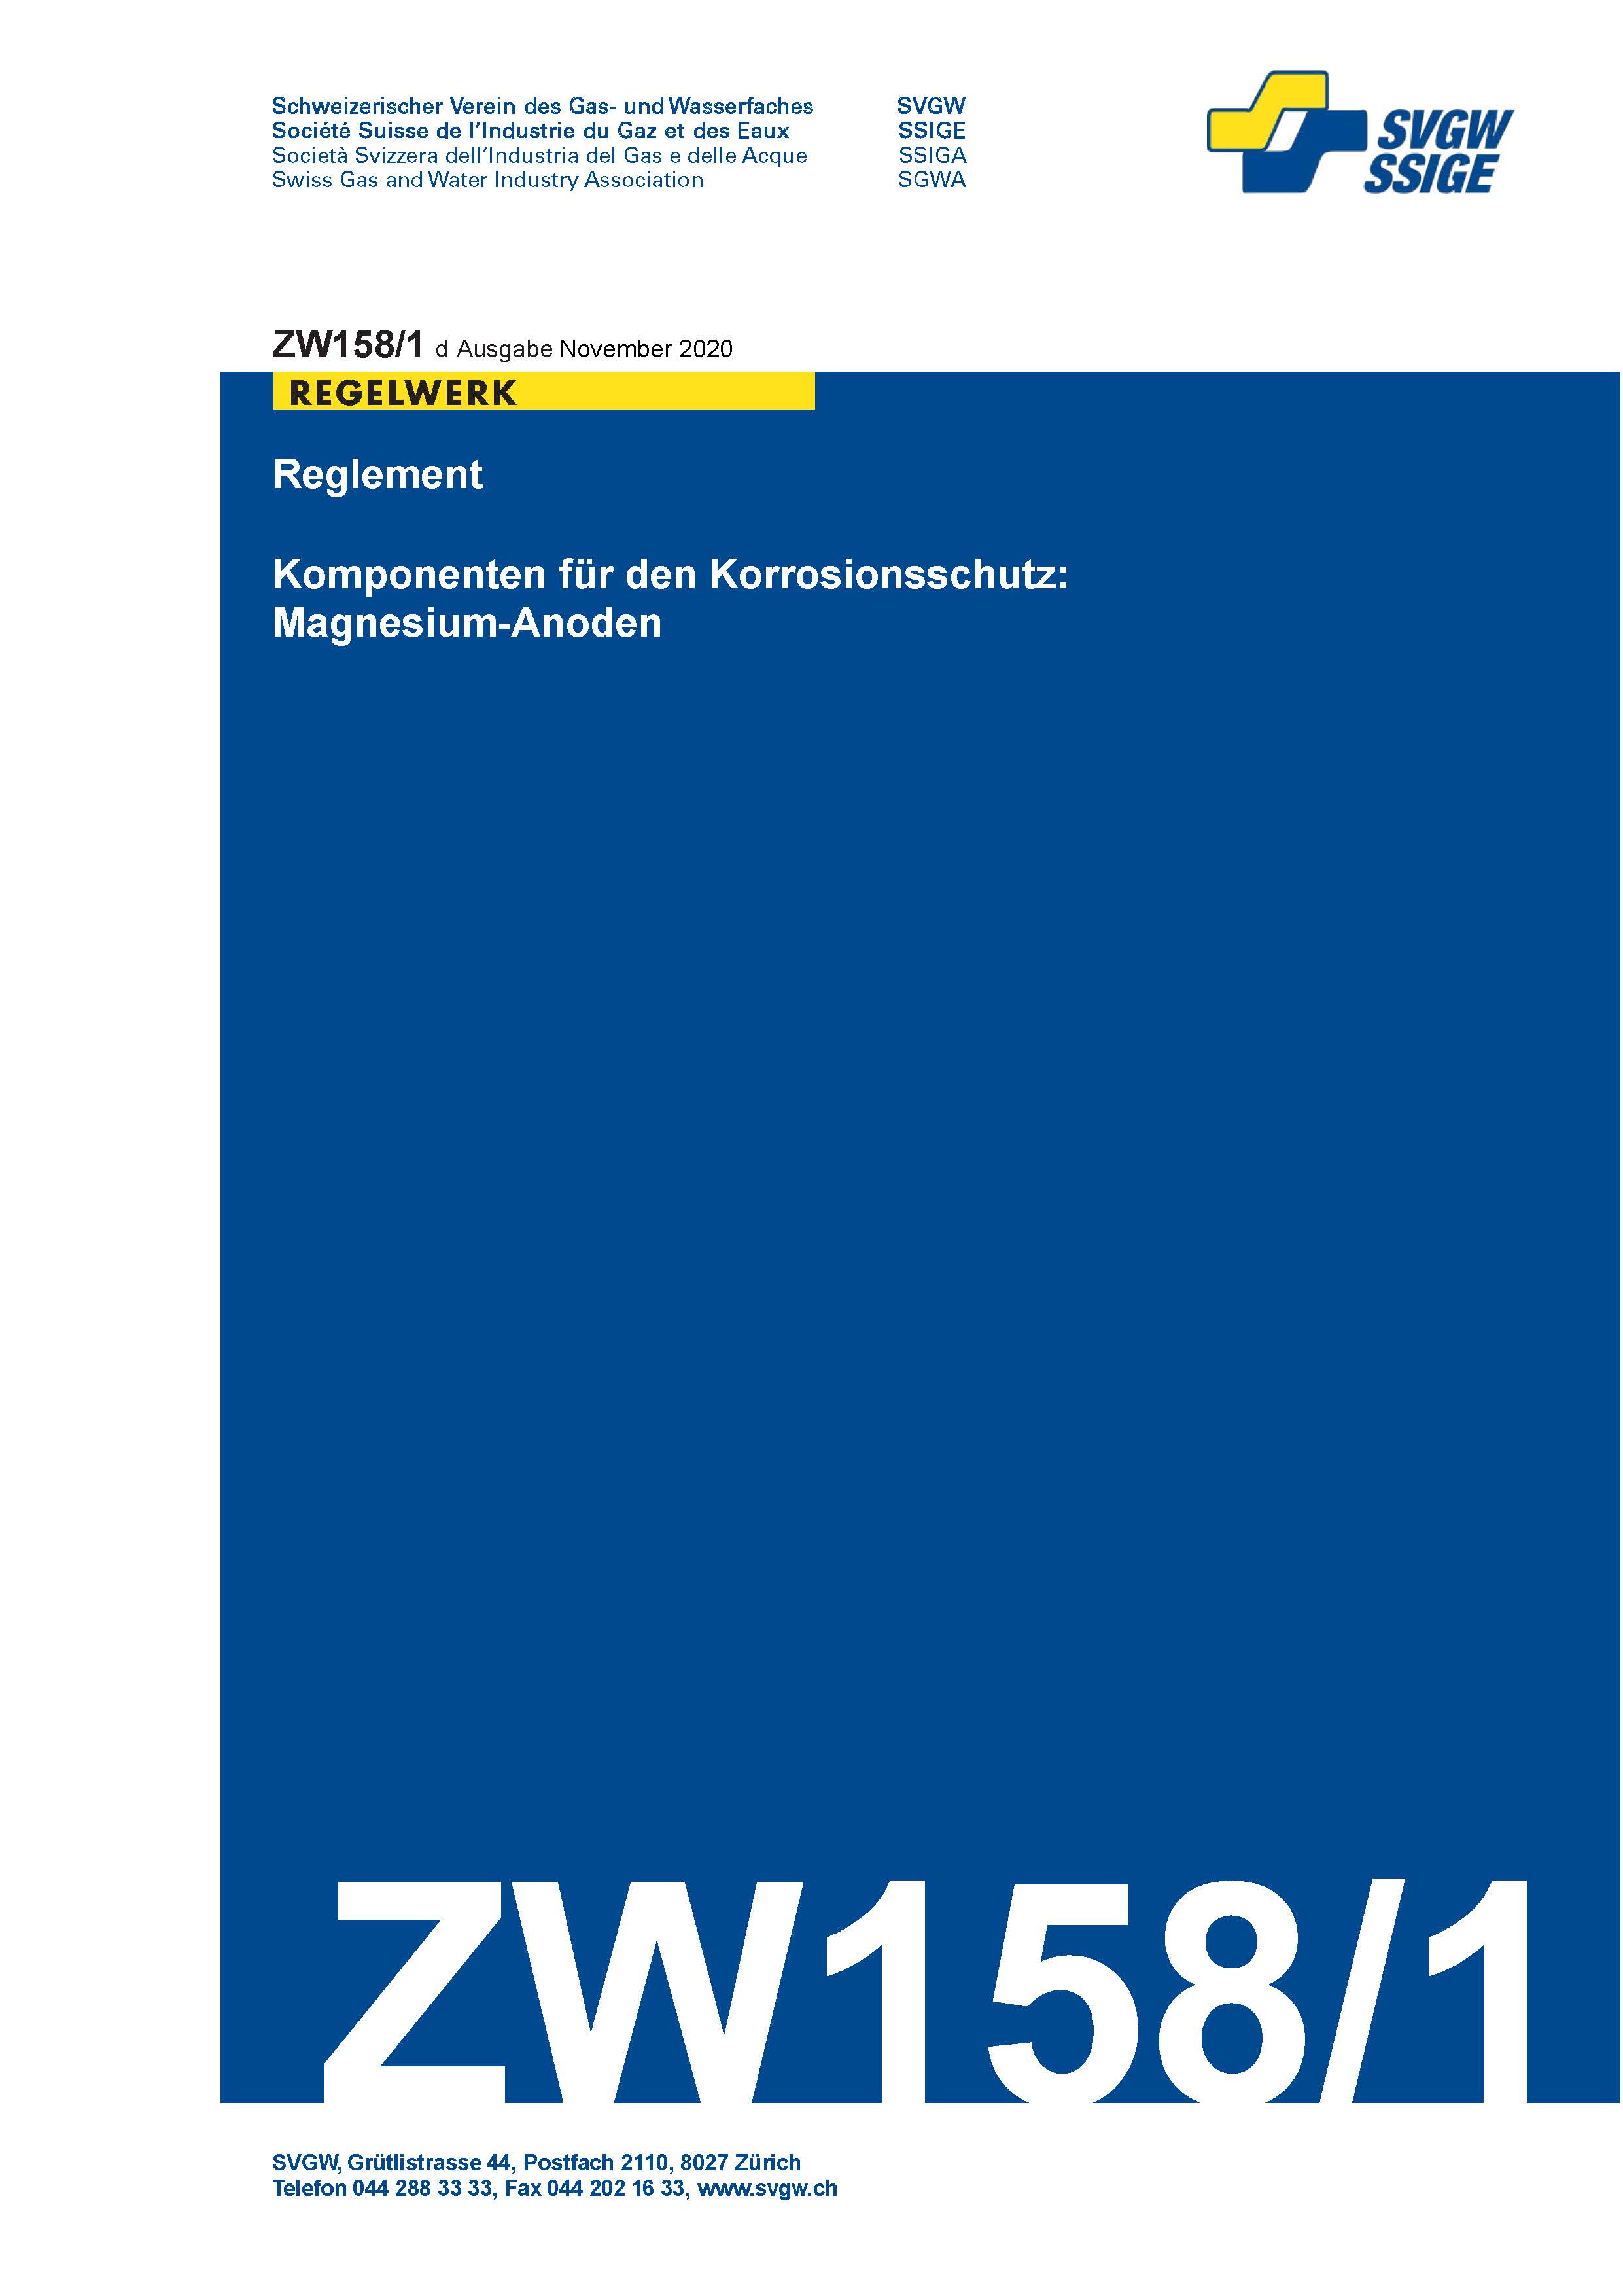 ZW158/1 d - Reglement; Komponenten für den Korrosionsschutz:Magnesium-Anoden